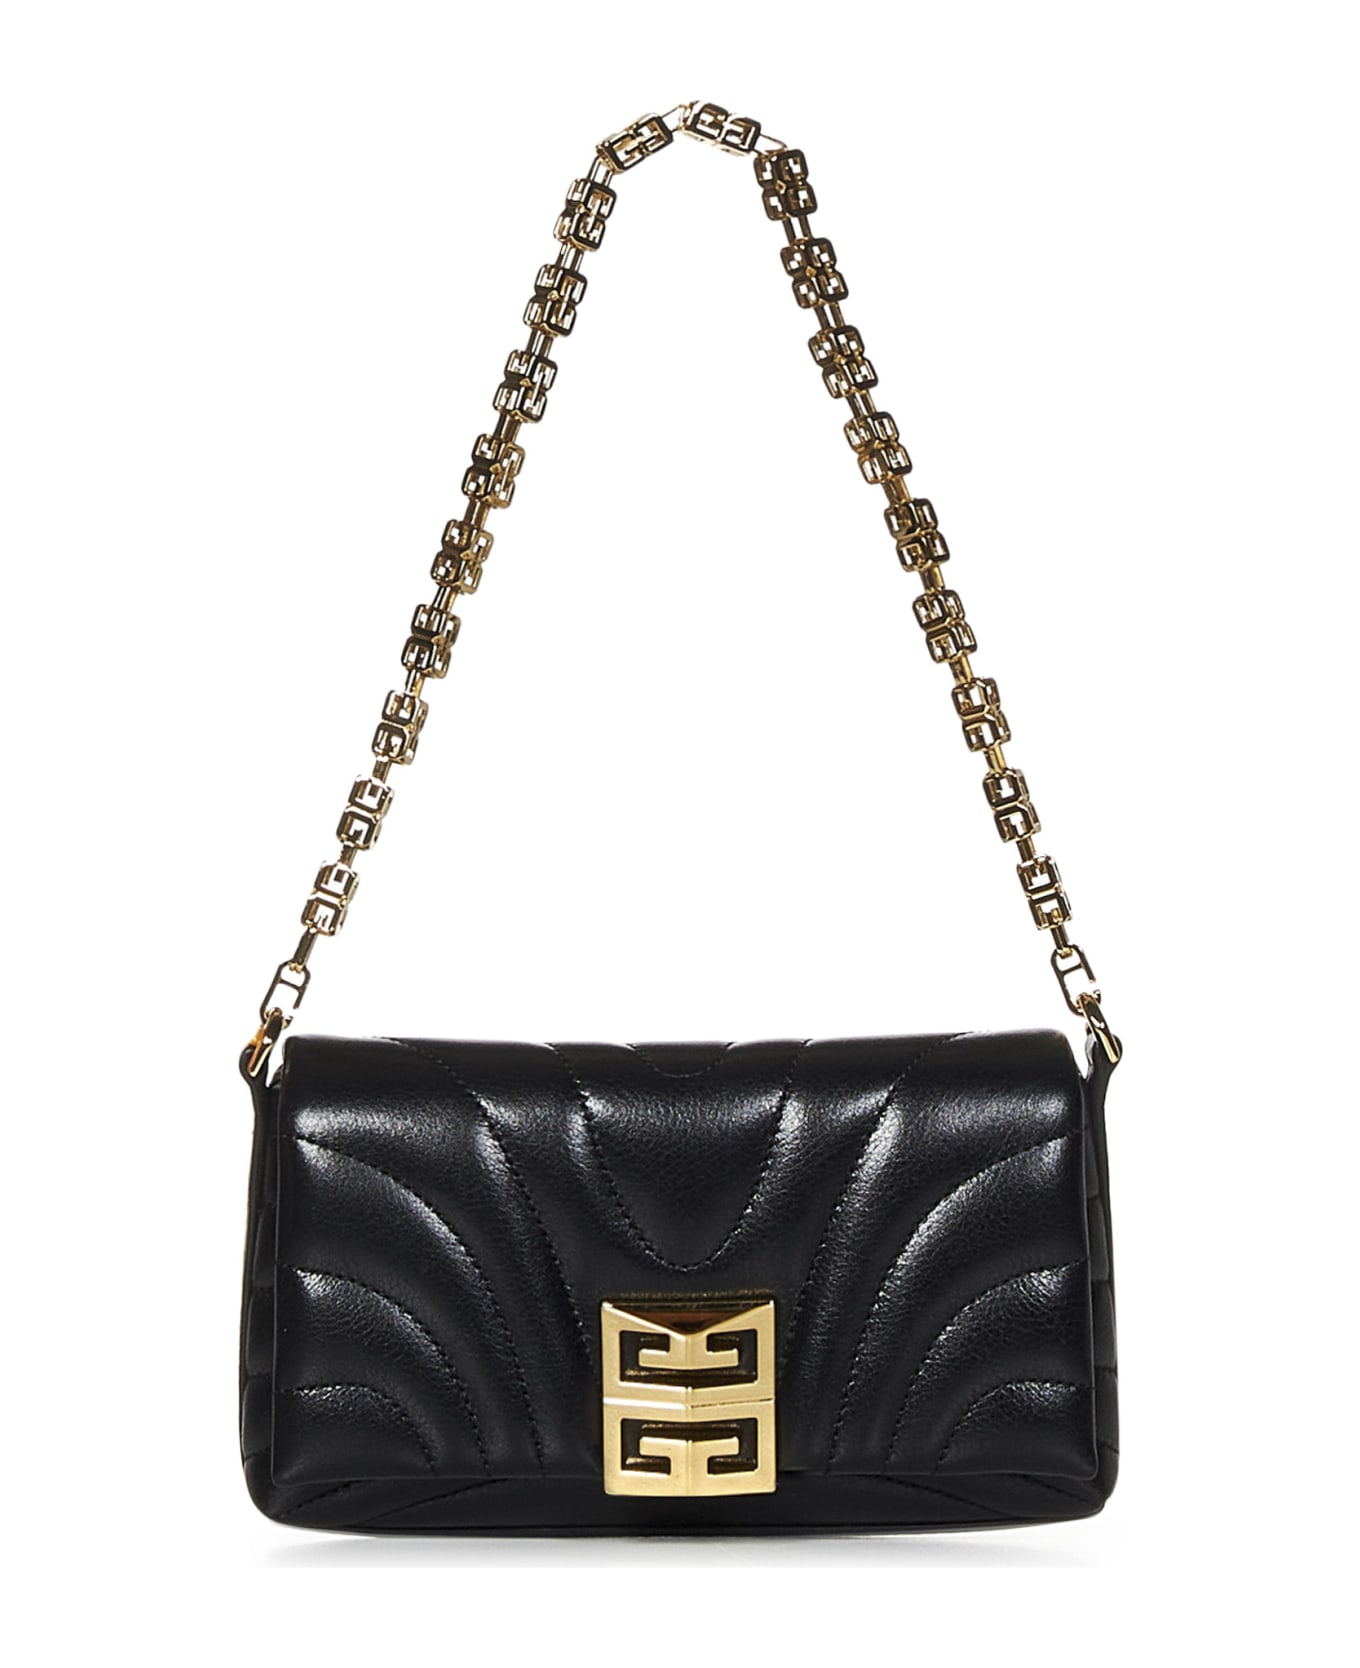 Givenchy 4g Soft Micro Shoulder Bag - Black